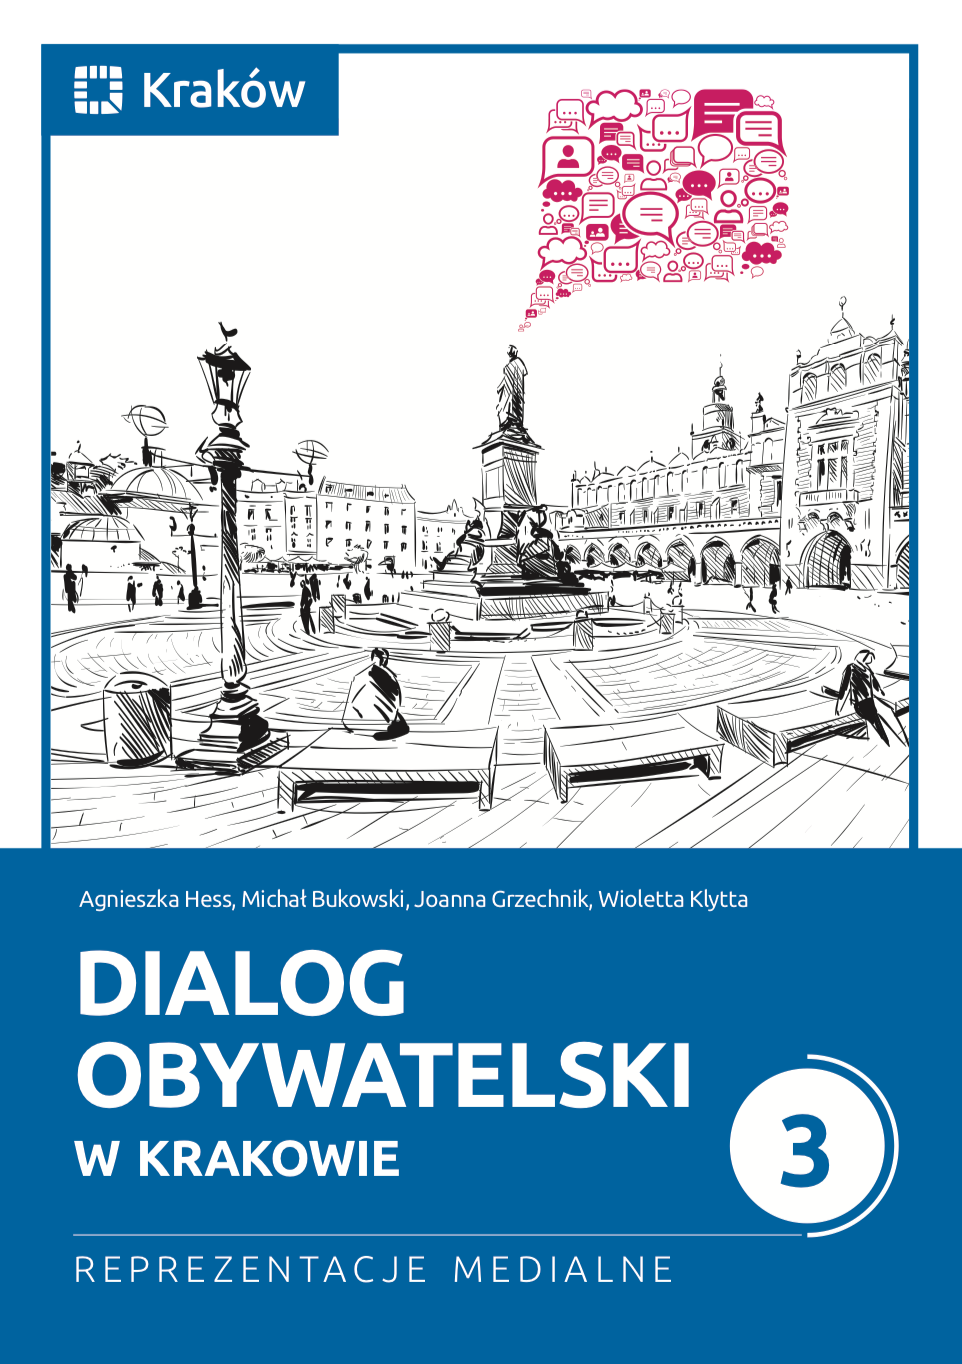 okładka książki "Dialog obywatelski w Krakowie 3. Reprezentacje medialne"